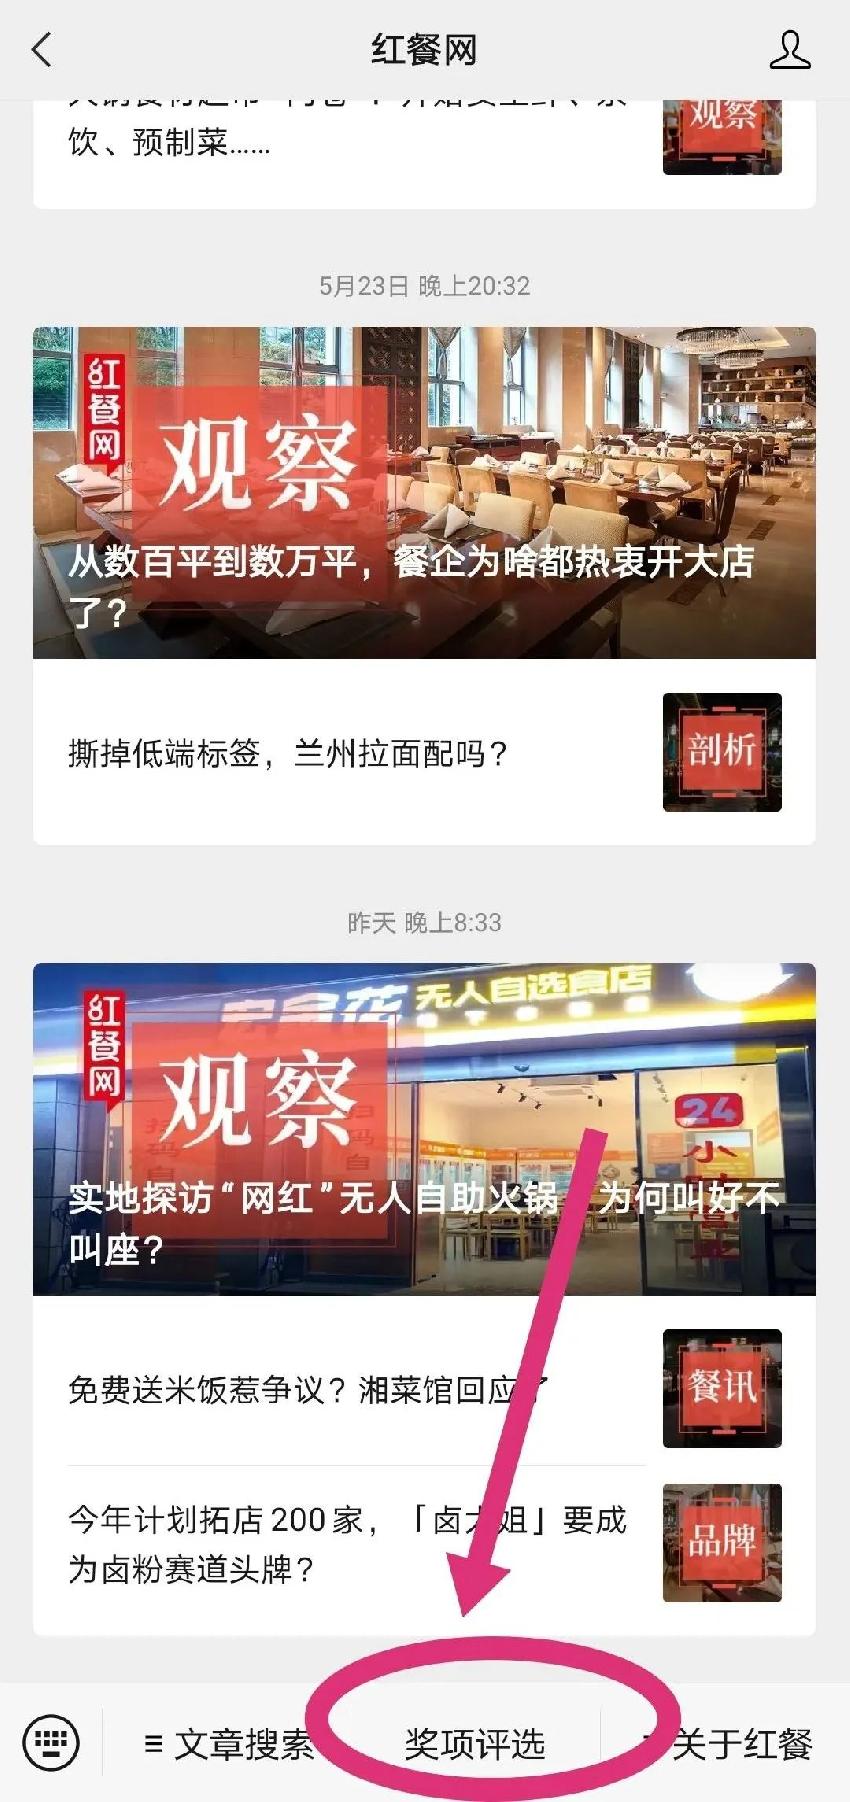  “红鲤奖”中国餐饮品类十大品牌评选网络投票正式开启！